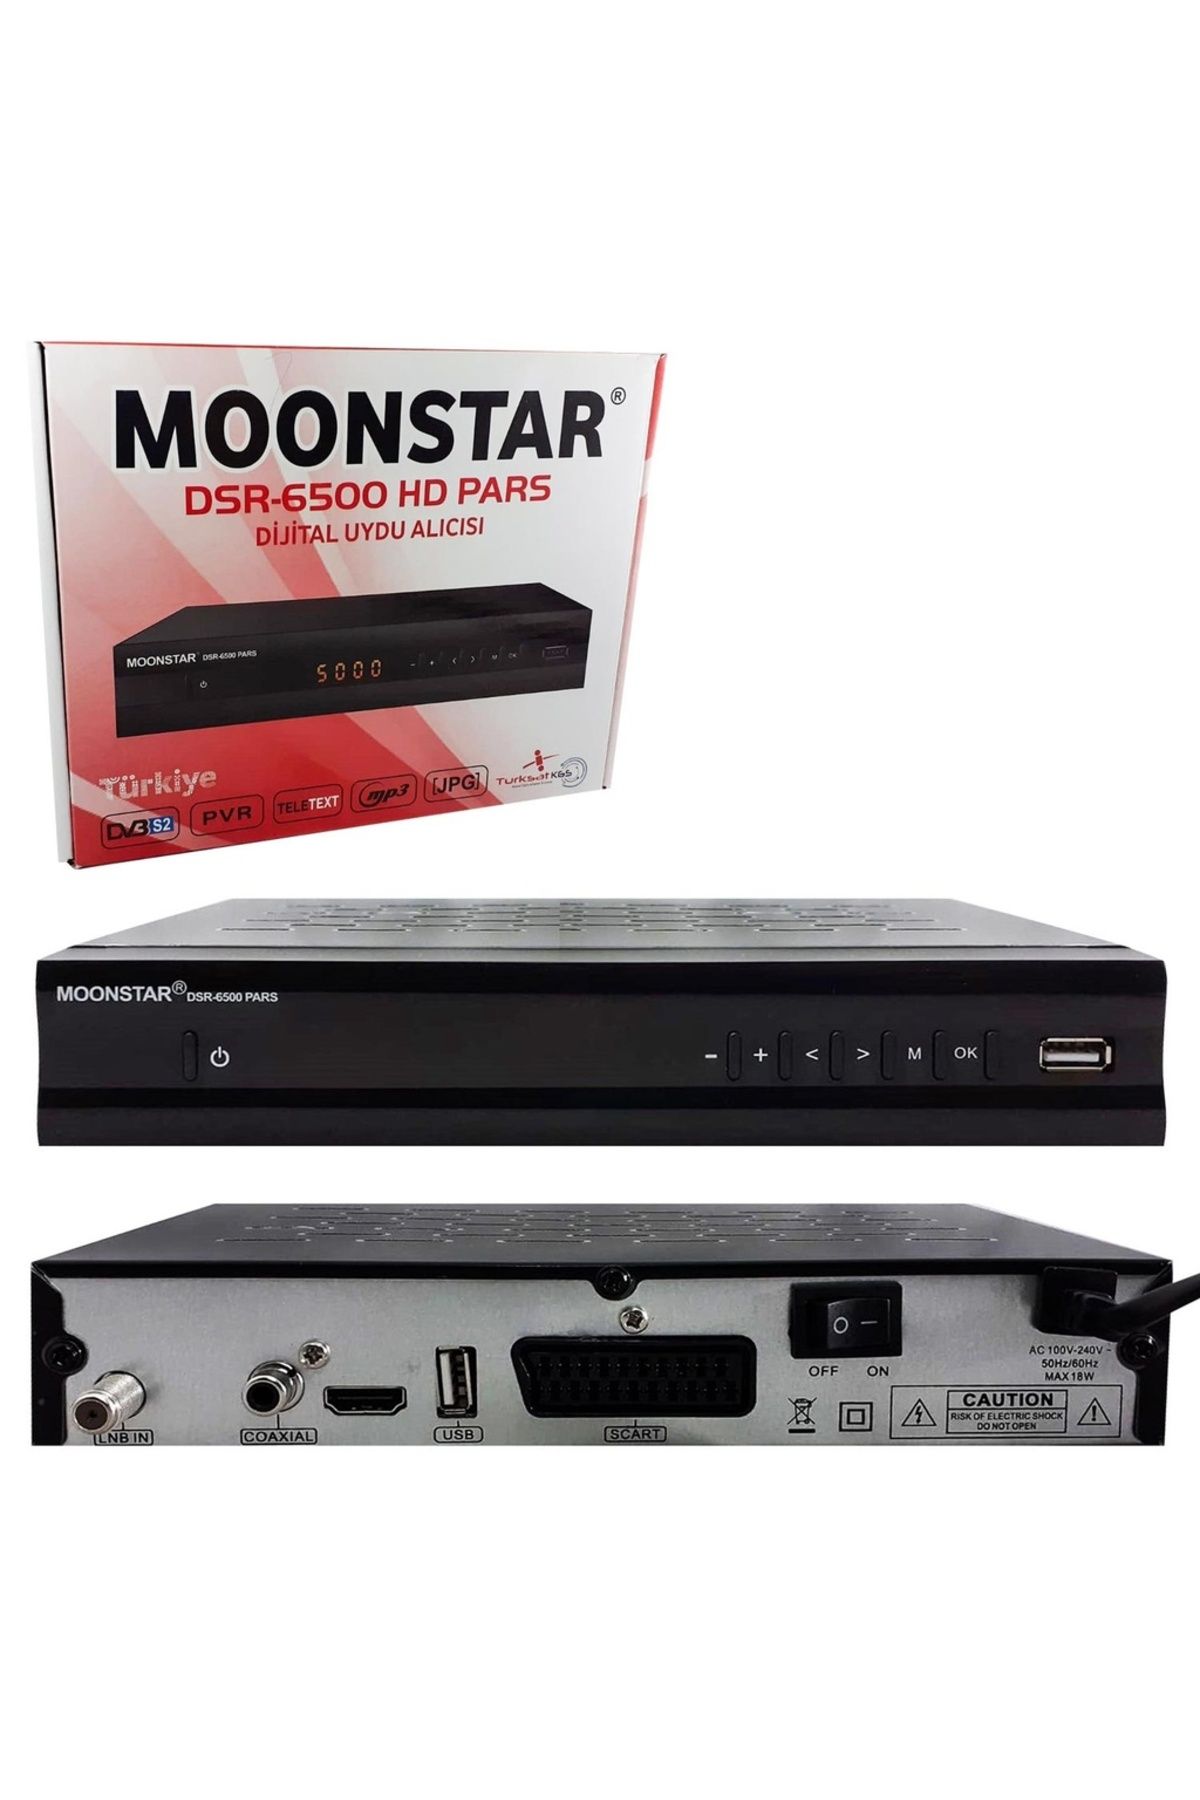 Moonstar Uydu Alici Kasalı Full Hd Hd - Scart Moonstar Dsr-6500 Hd Pars